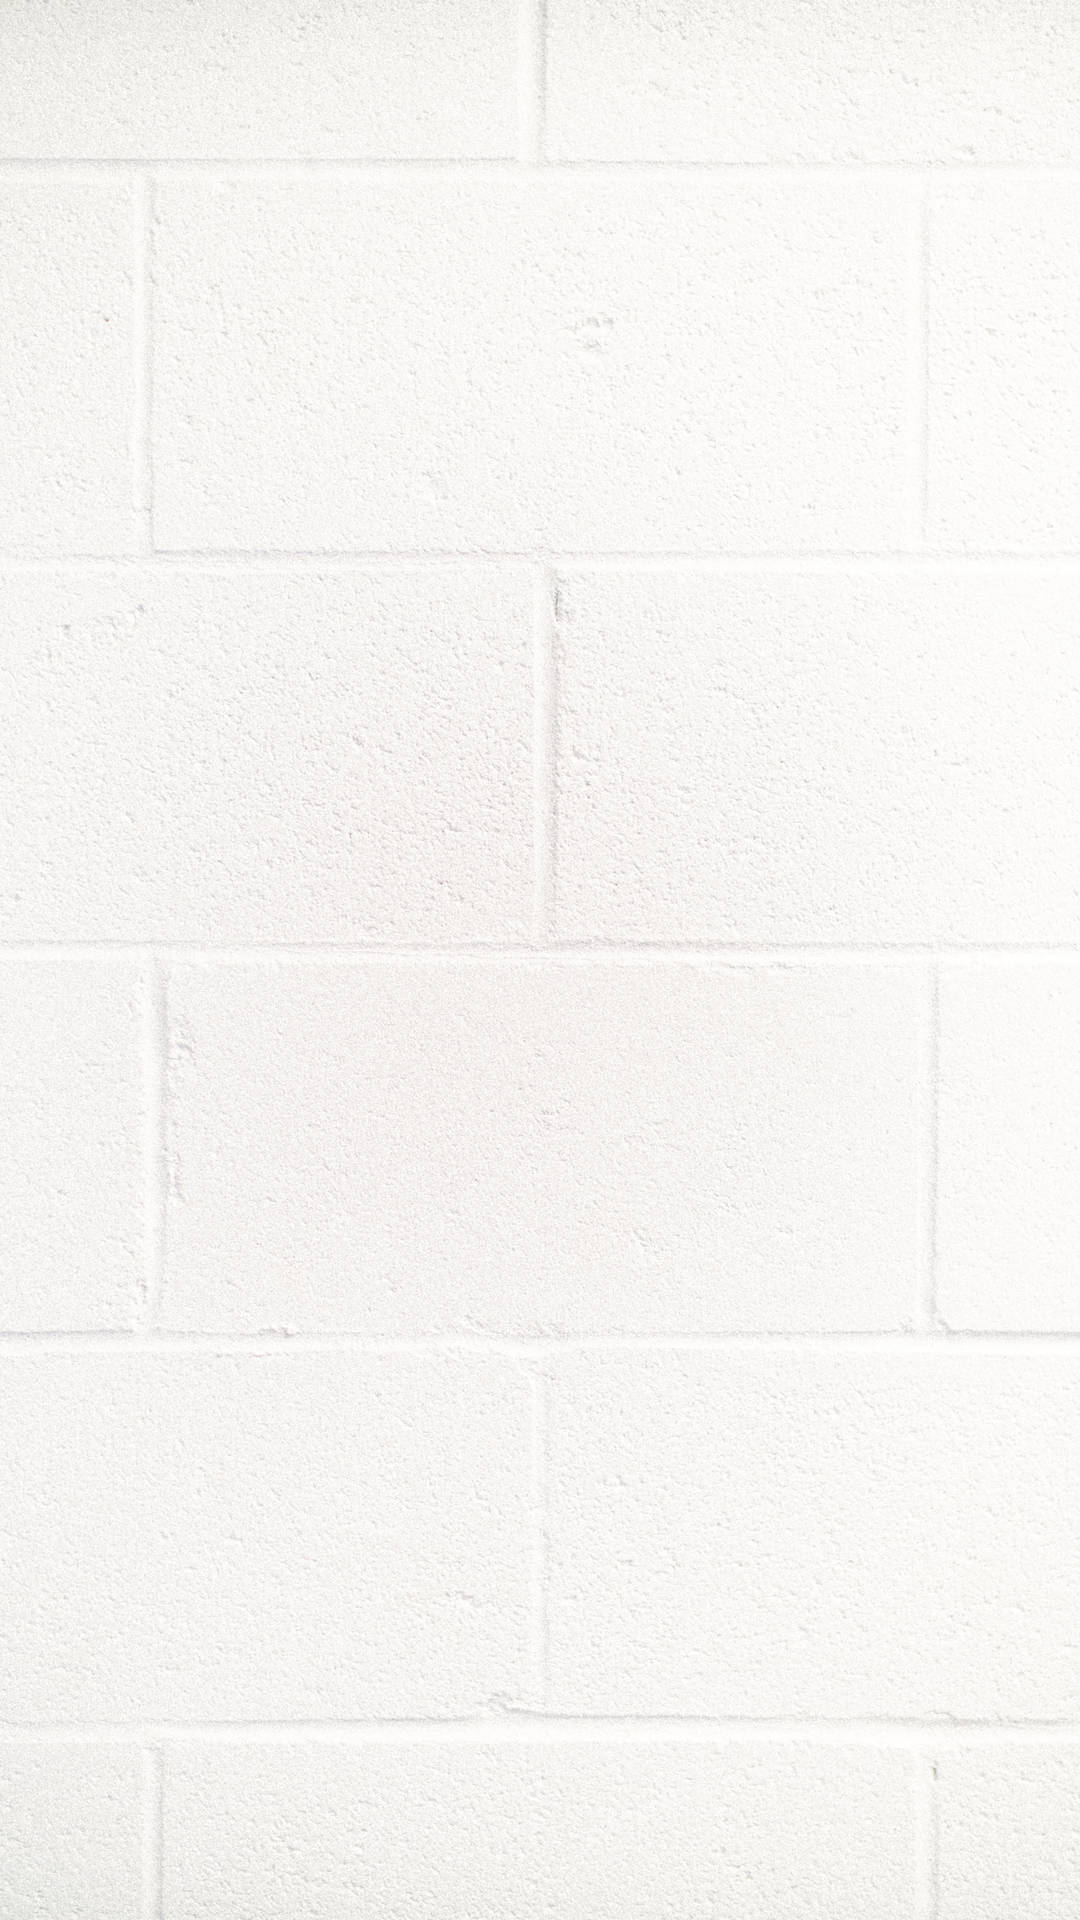 White 3376X6000 wallpaper